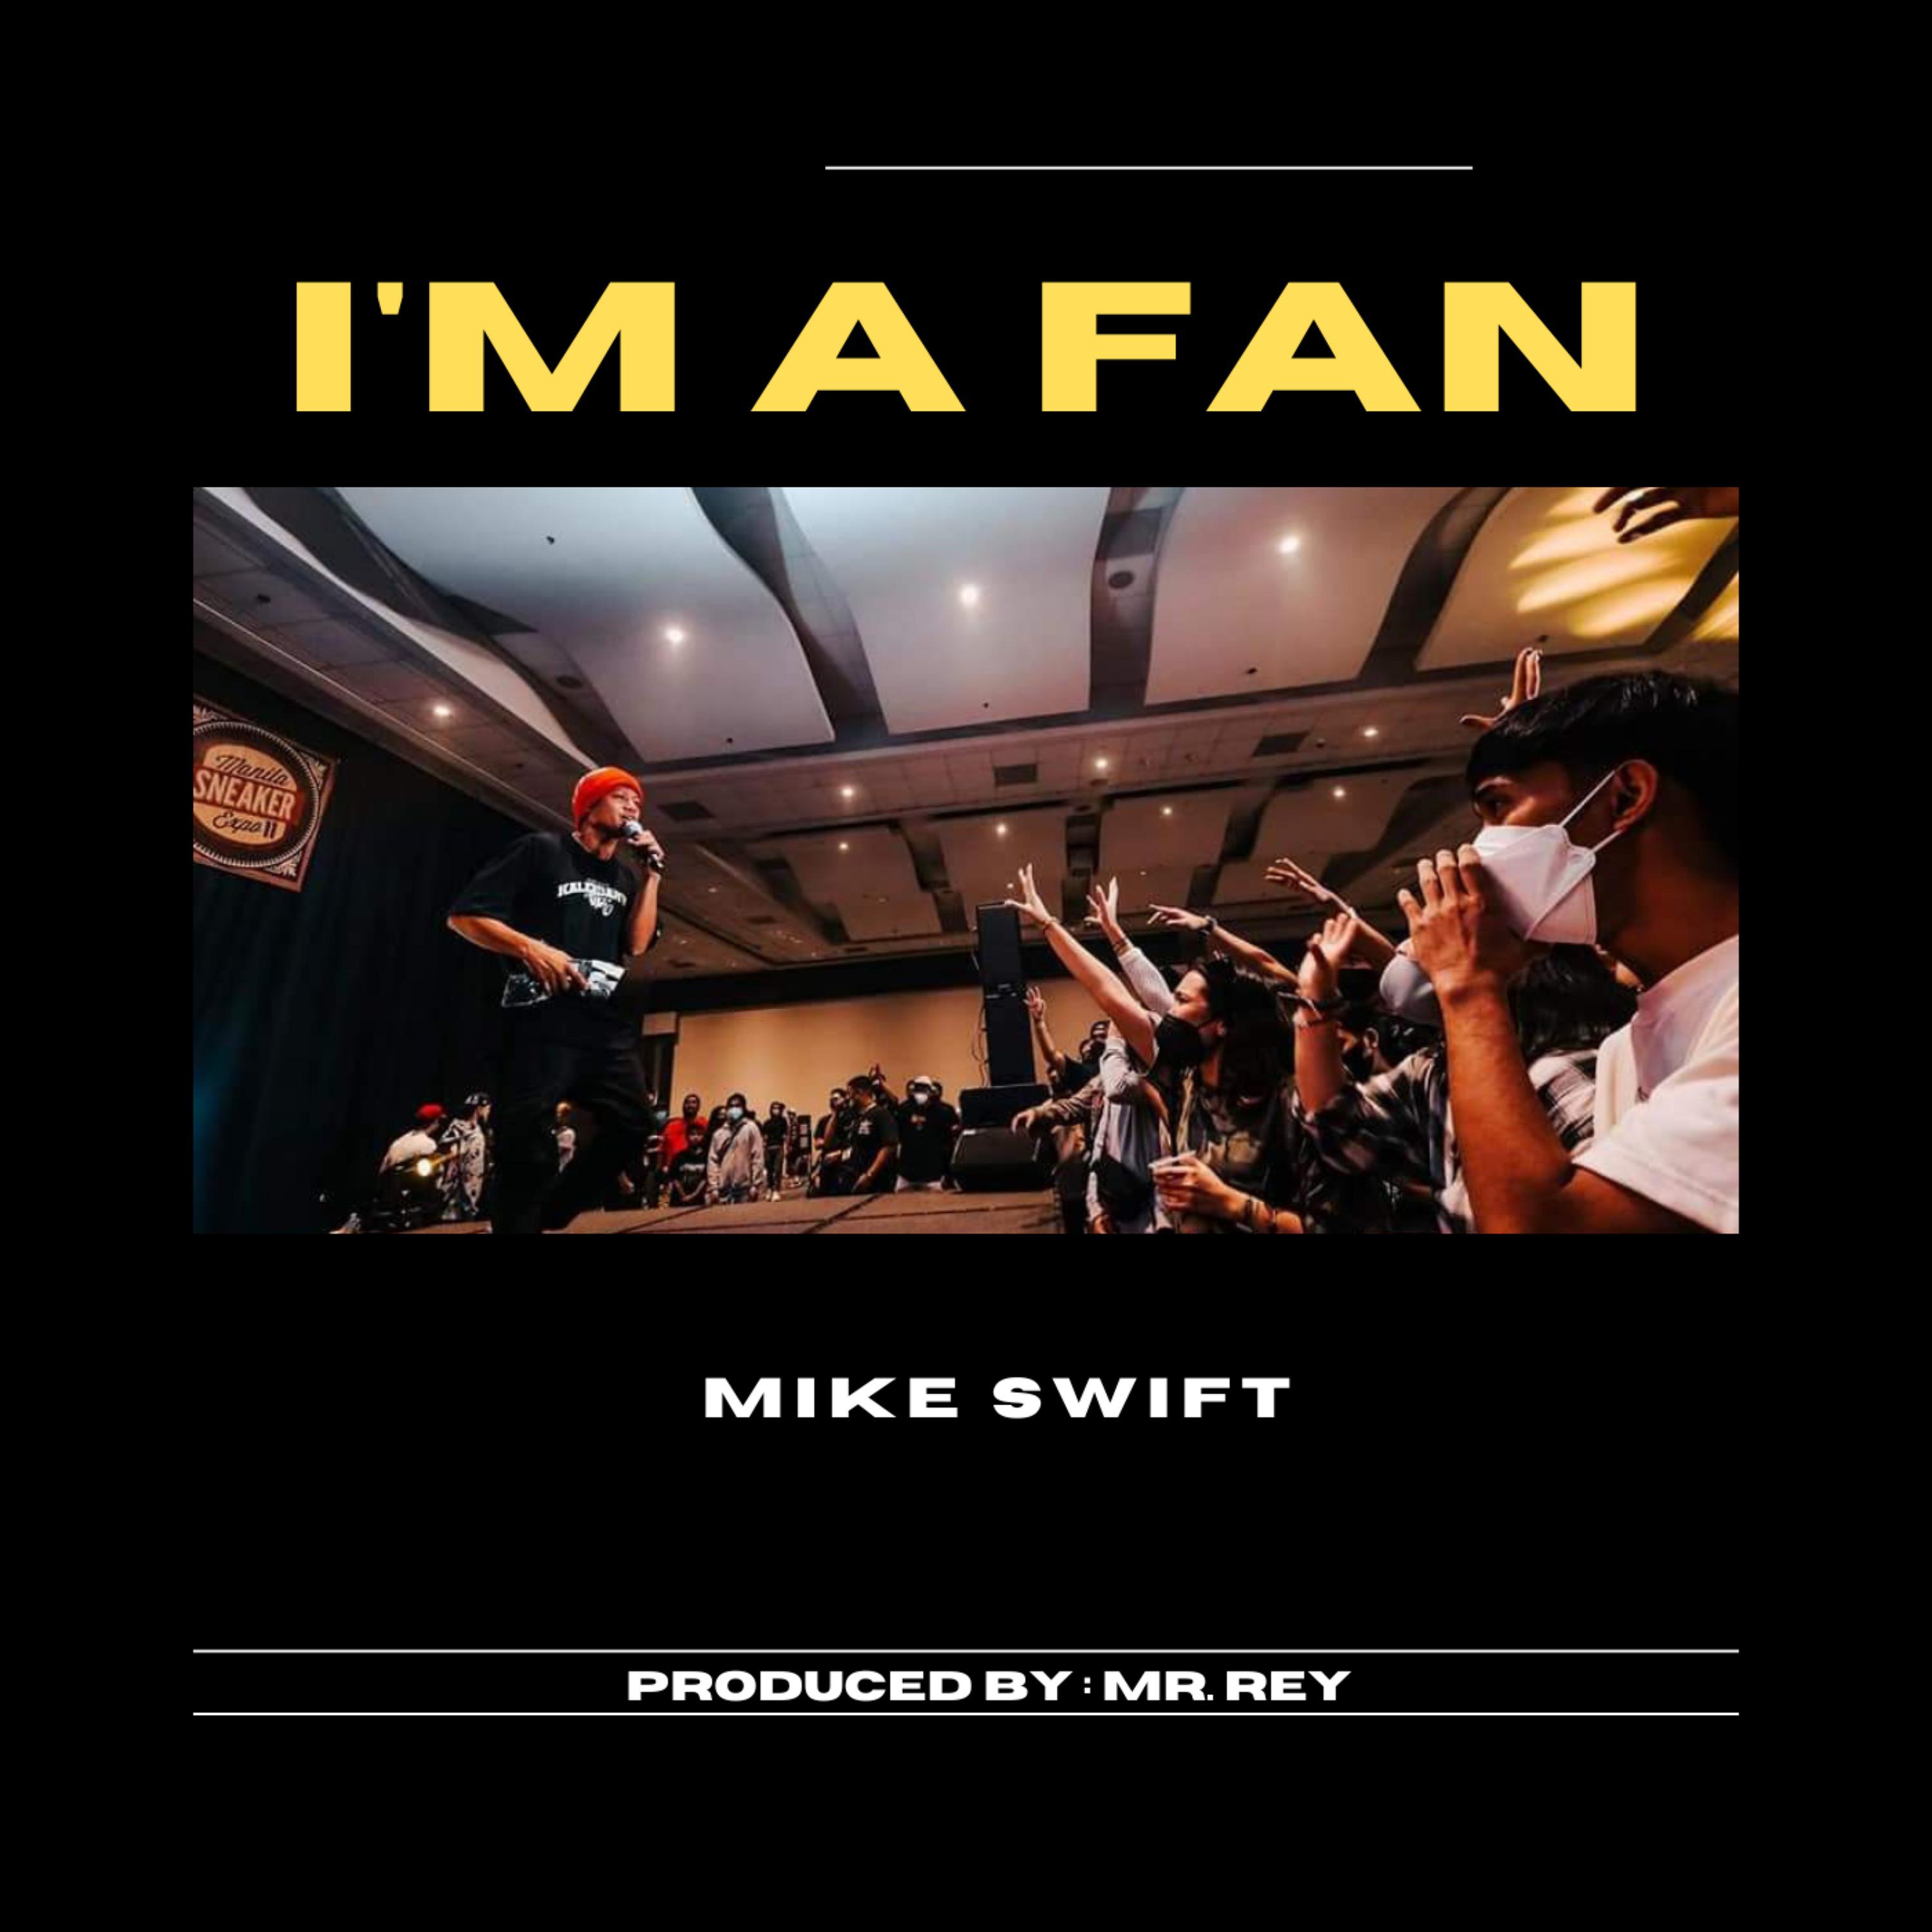 Mike Swift - I'M A FAN